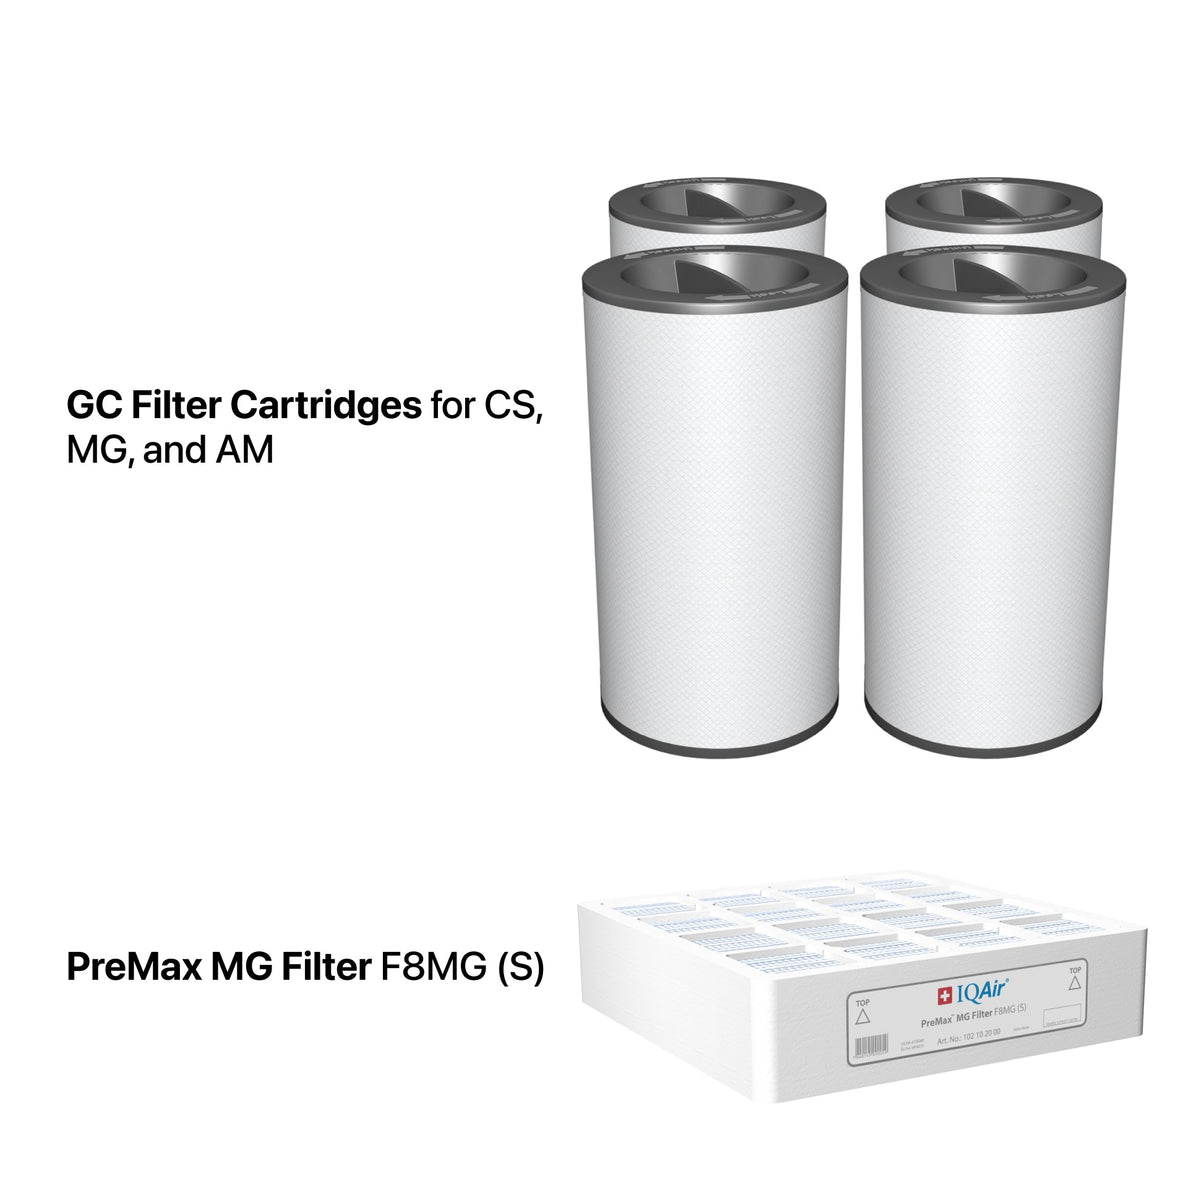 GC Multigas filters